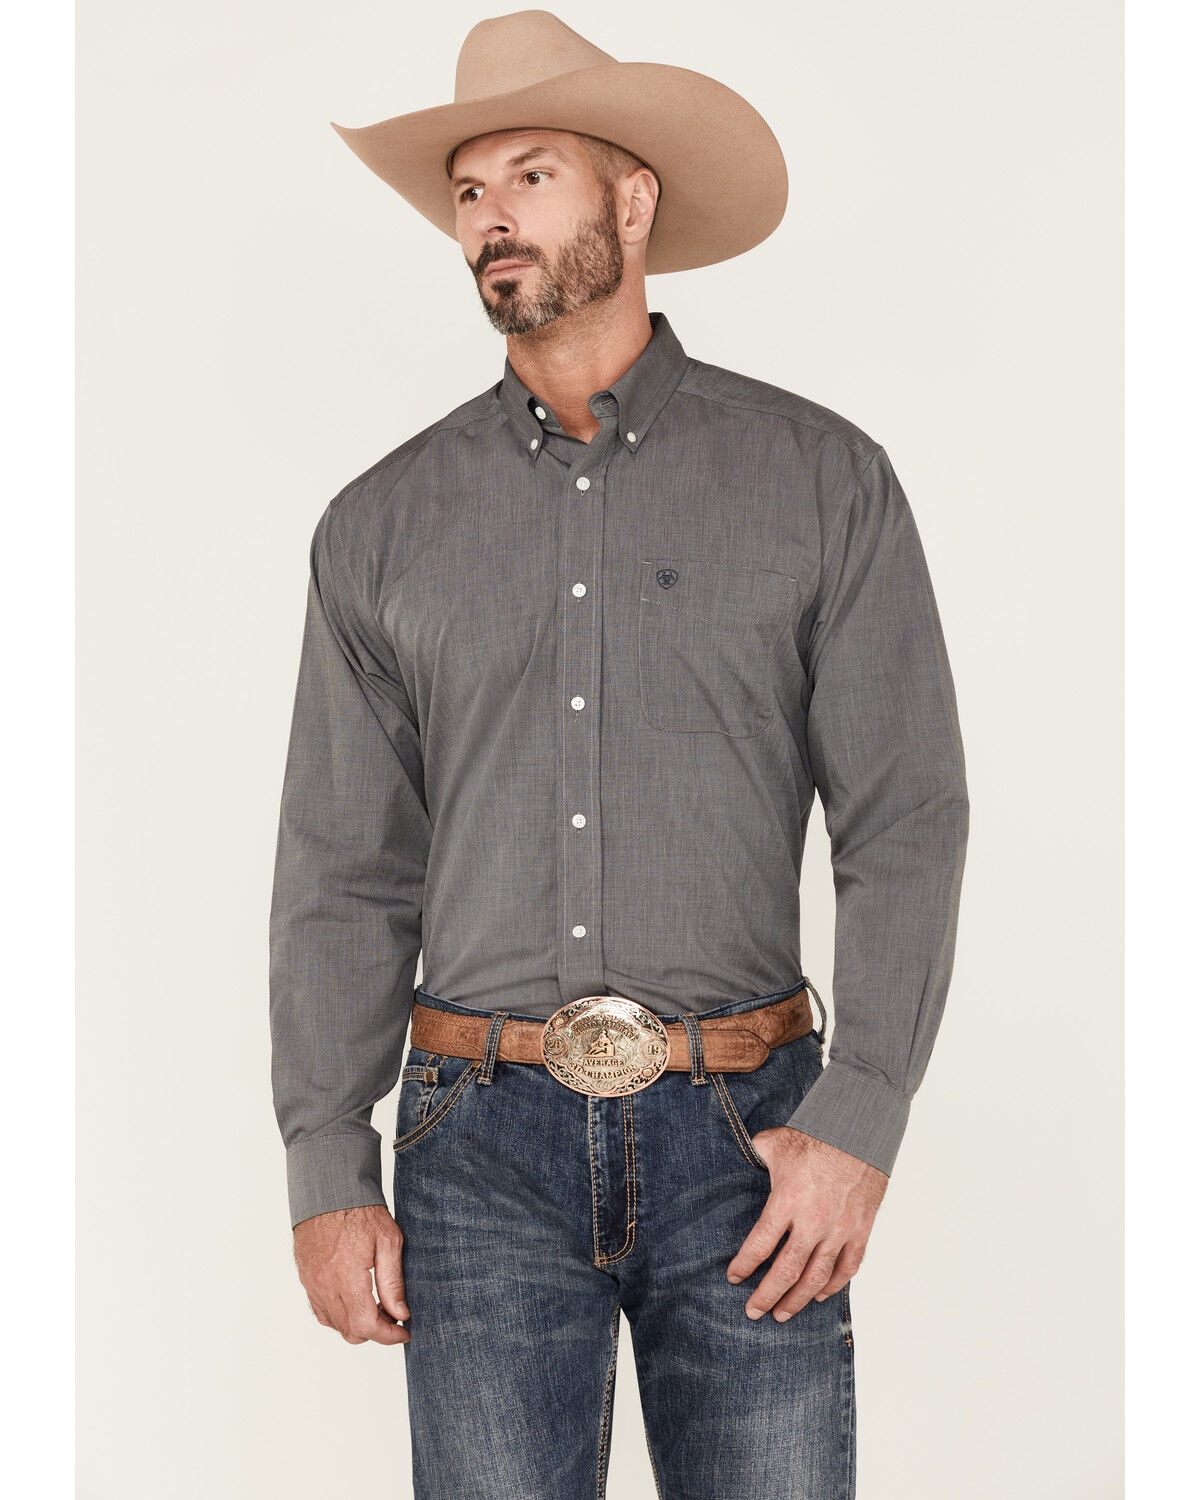 HEFASDM Mens Long Sleeve Button Up Turn Down Collar Regular Fit Western Shirt